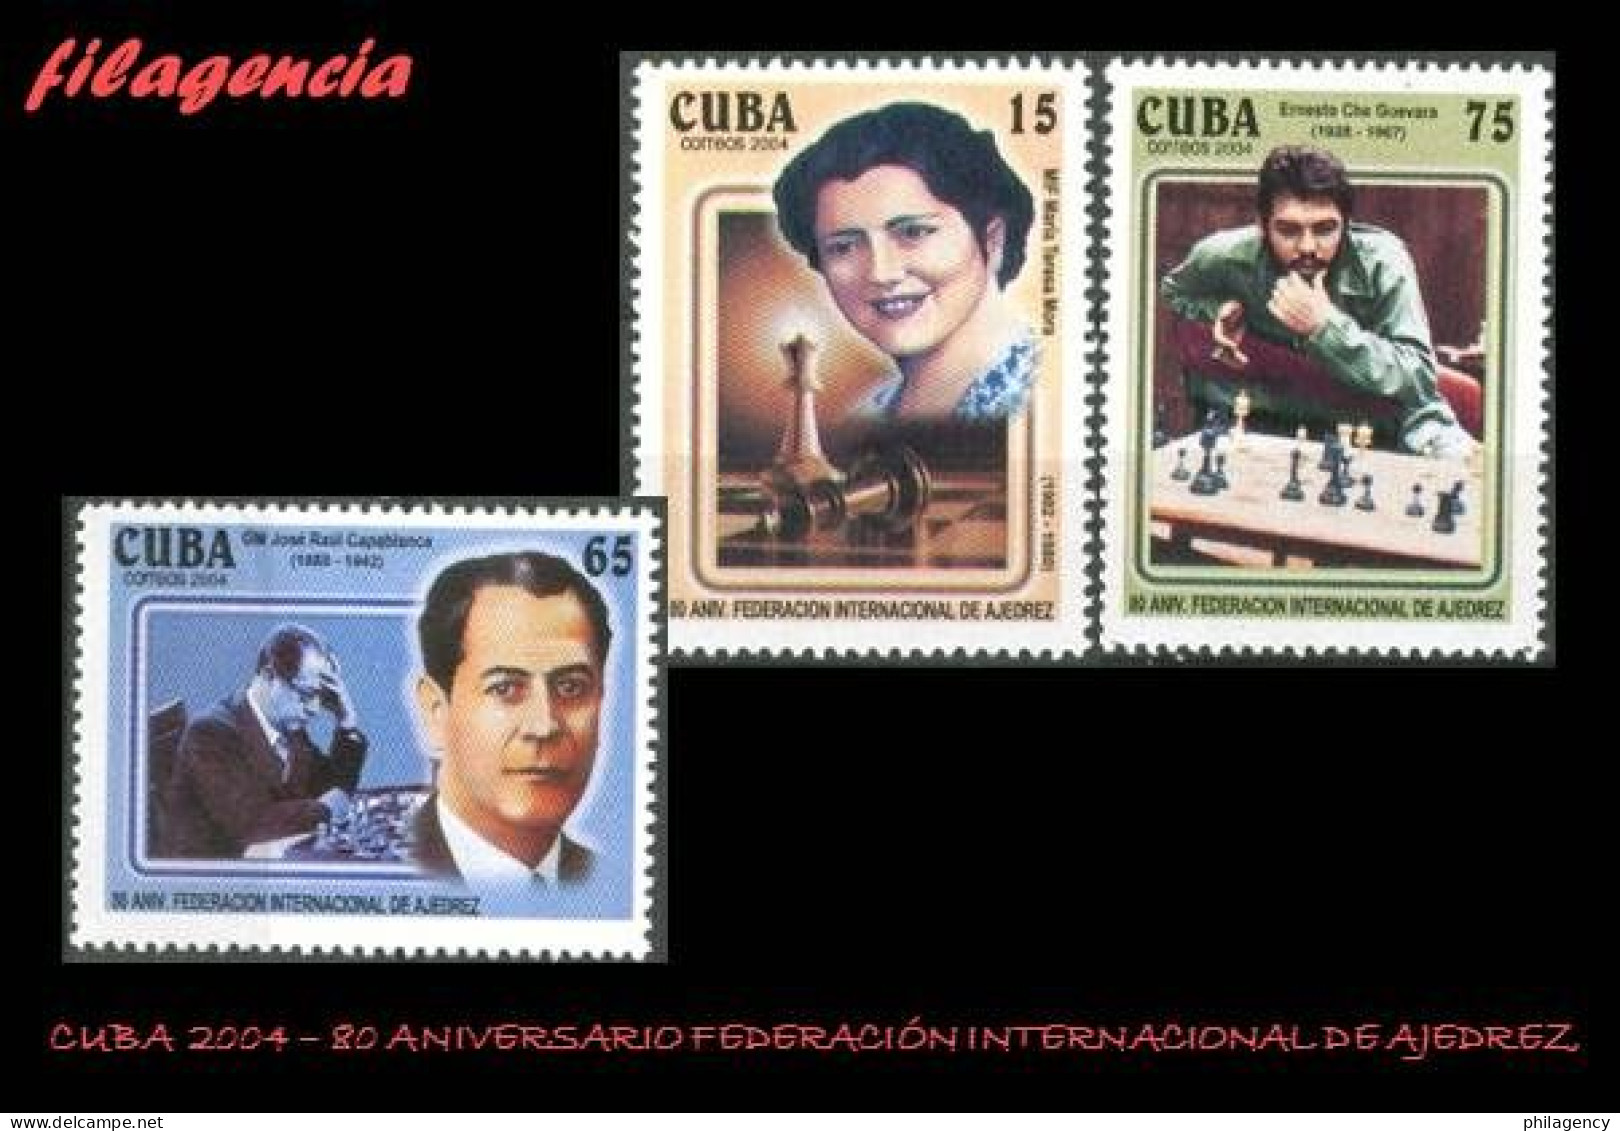 CUBA MINT. 2004-17 80 ANIVERSARIO DE LA FEDERACIÓN INTERNACIONAL DE AJEDREZ. ERNESTO CHE GUEVARA - Nuevos